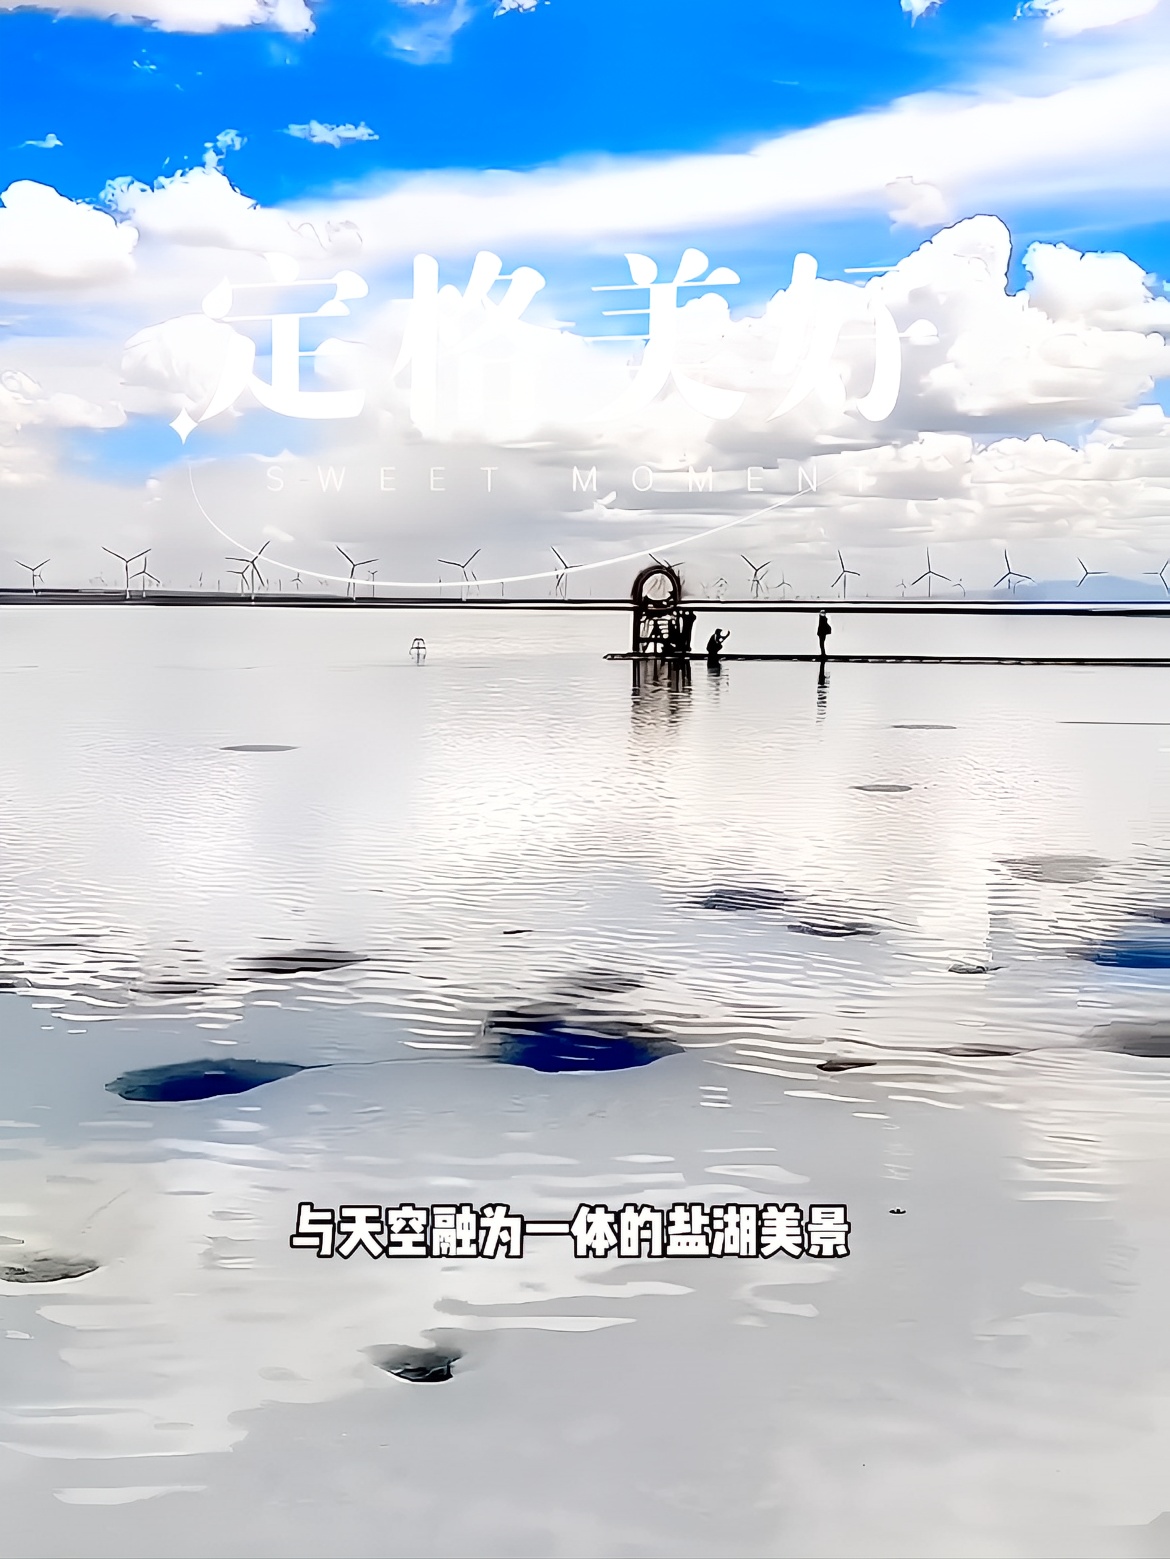 您知道中国的天空之镜是哪里吗？ #盐湖美景 #盐湖旅游 #青海盐湖风光